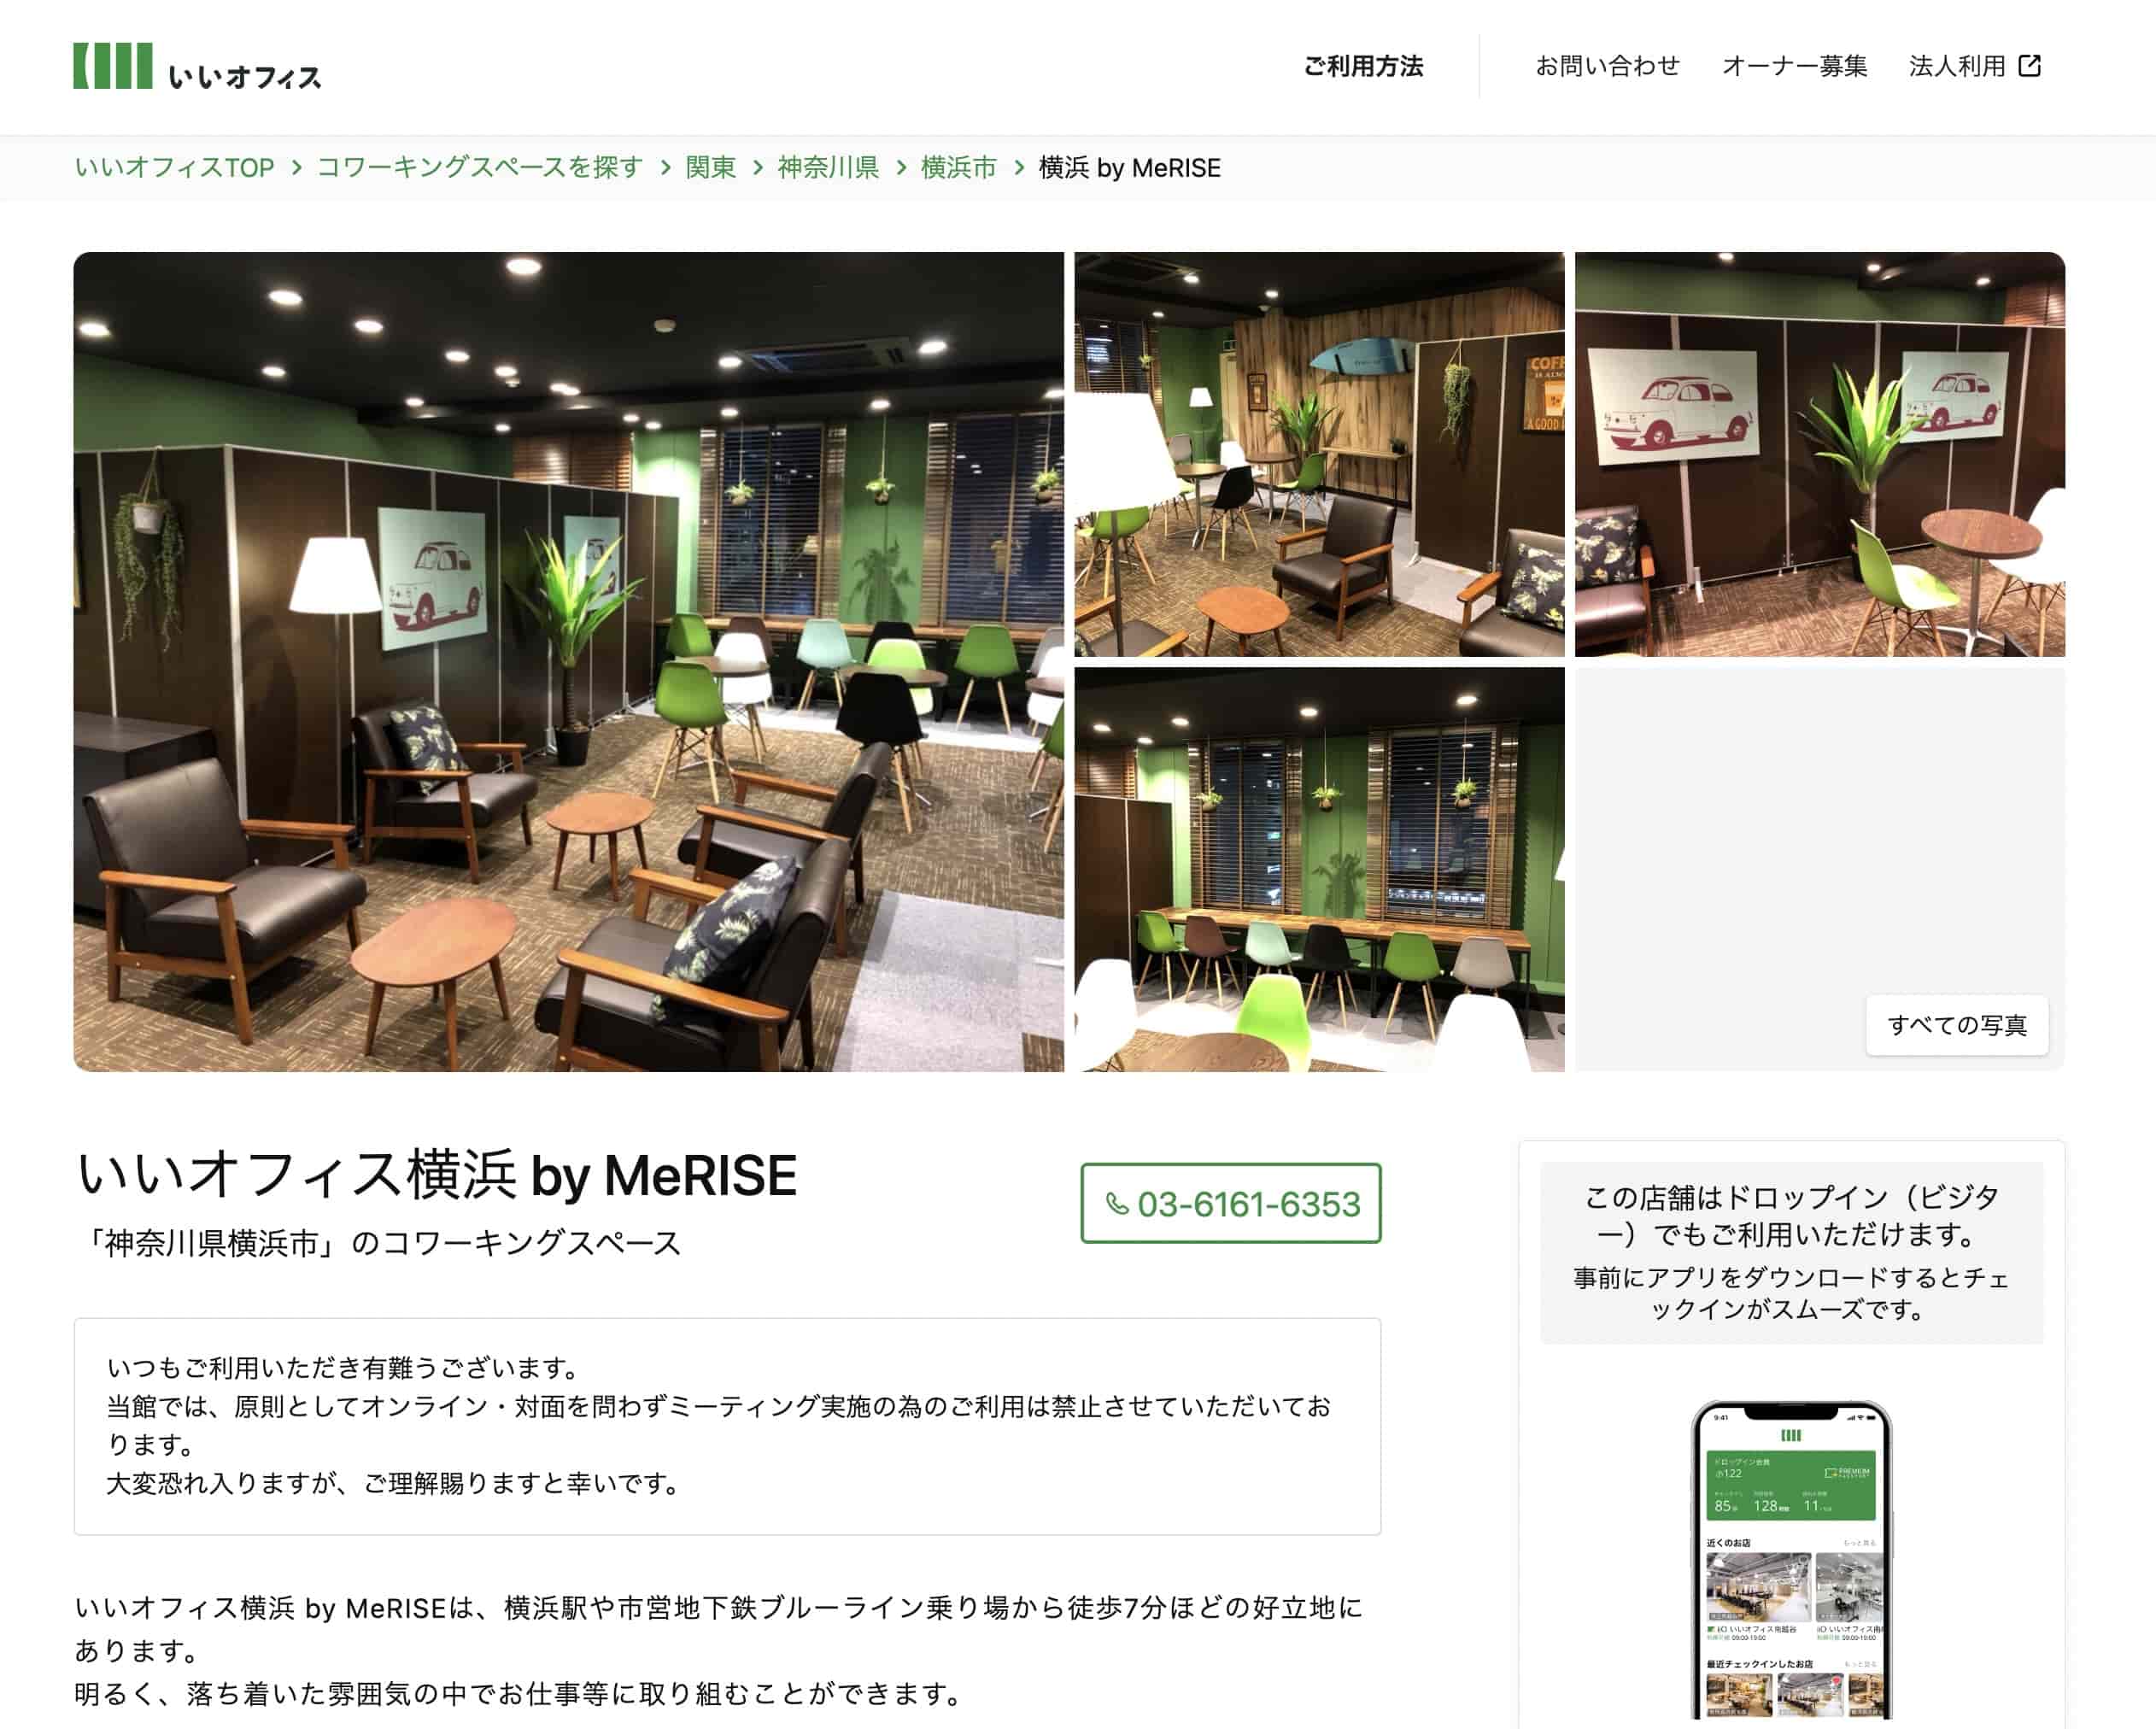 いいオフィス横浜 by MeRISE